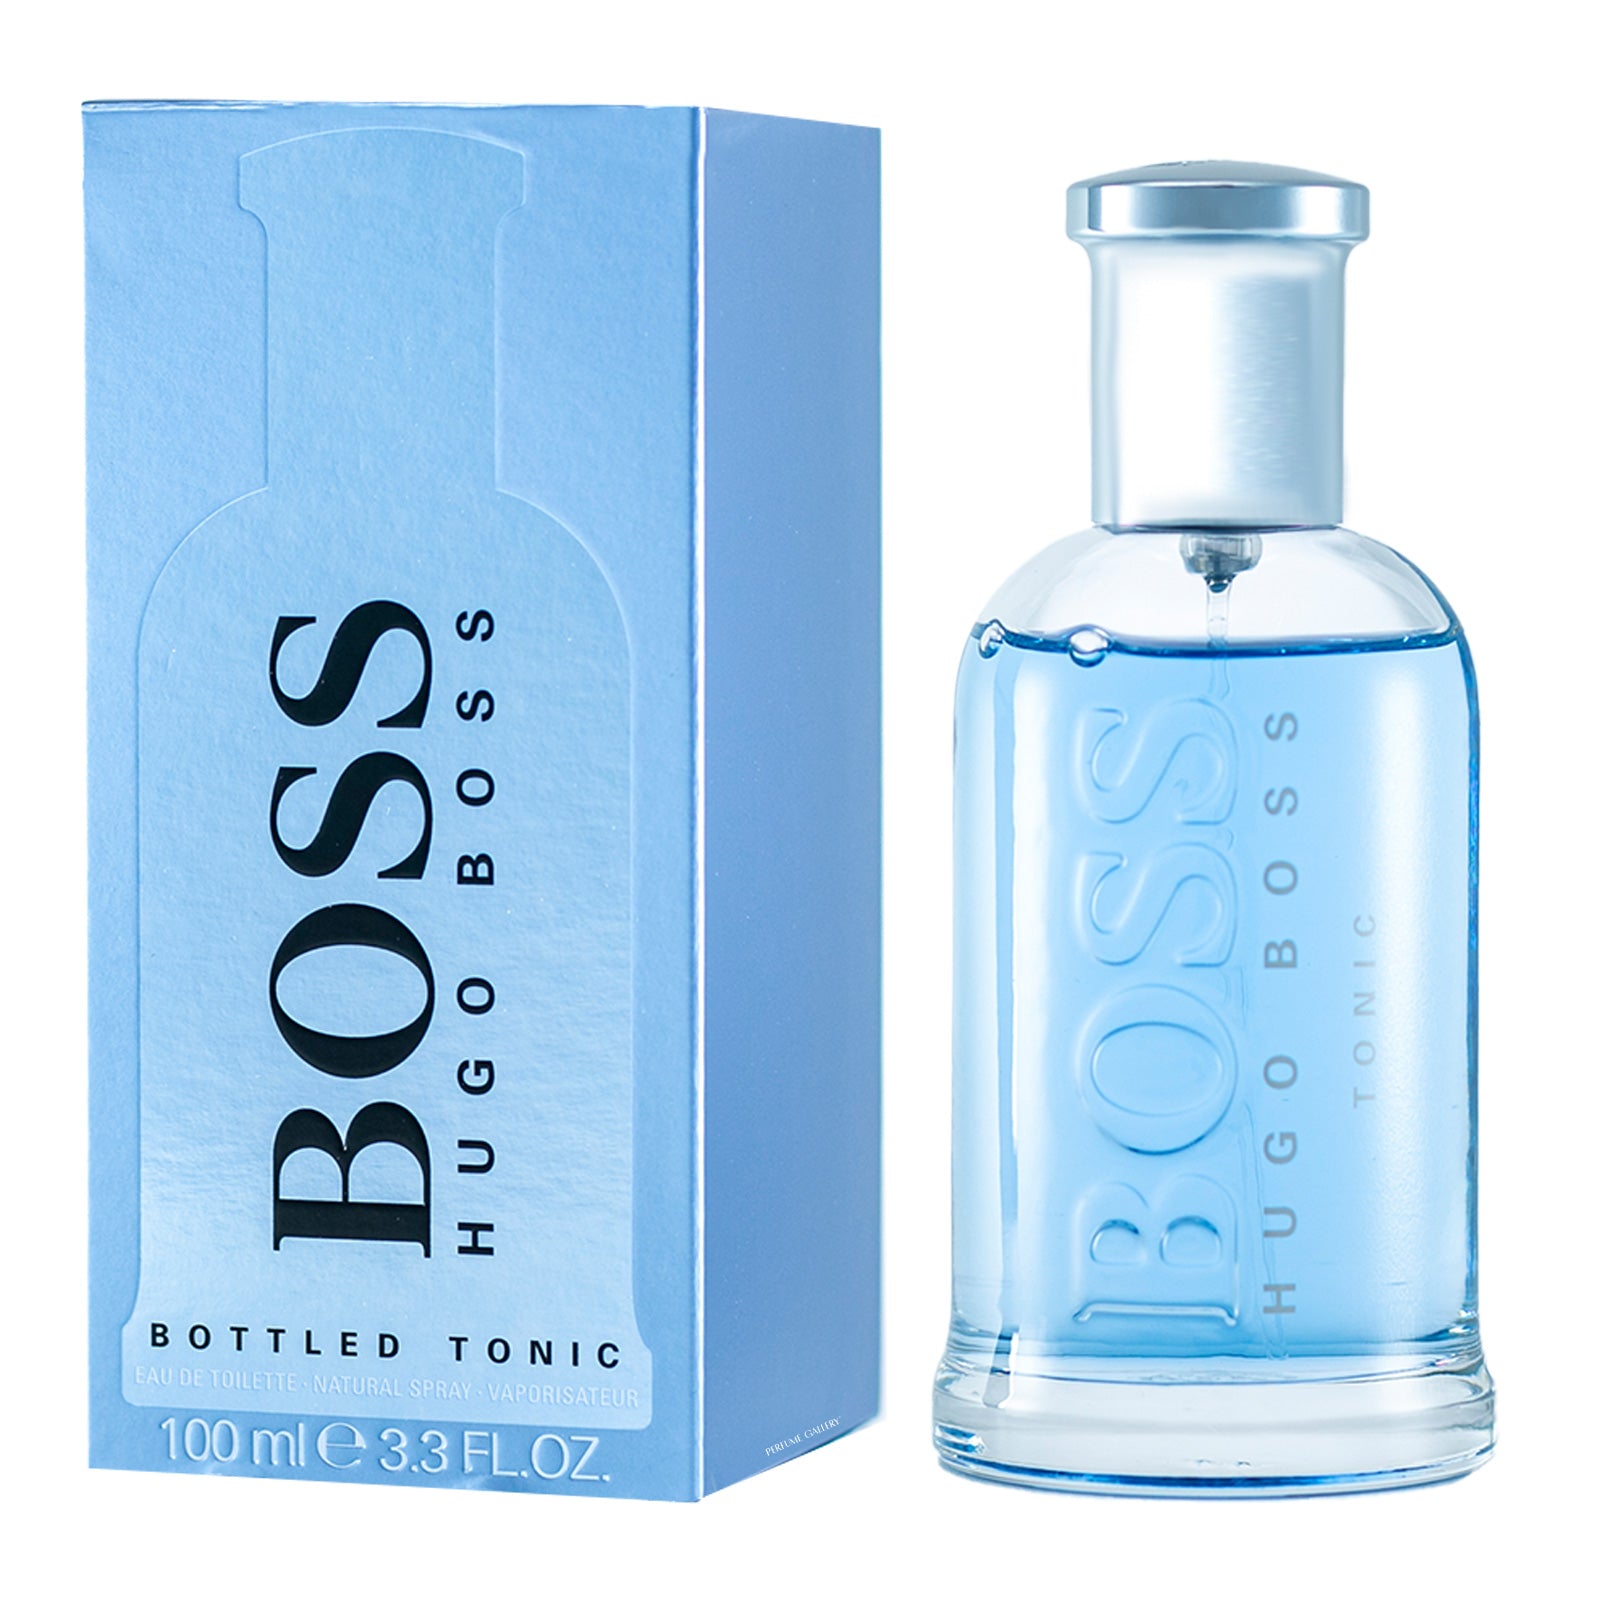 Boss Bottled HUGO BOSS Eau de Parfum para Hombre precio